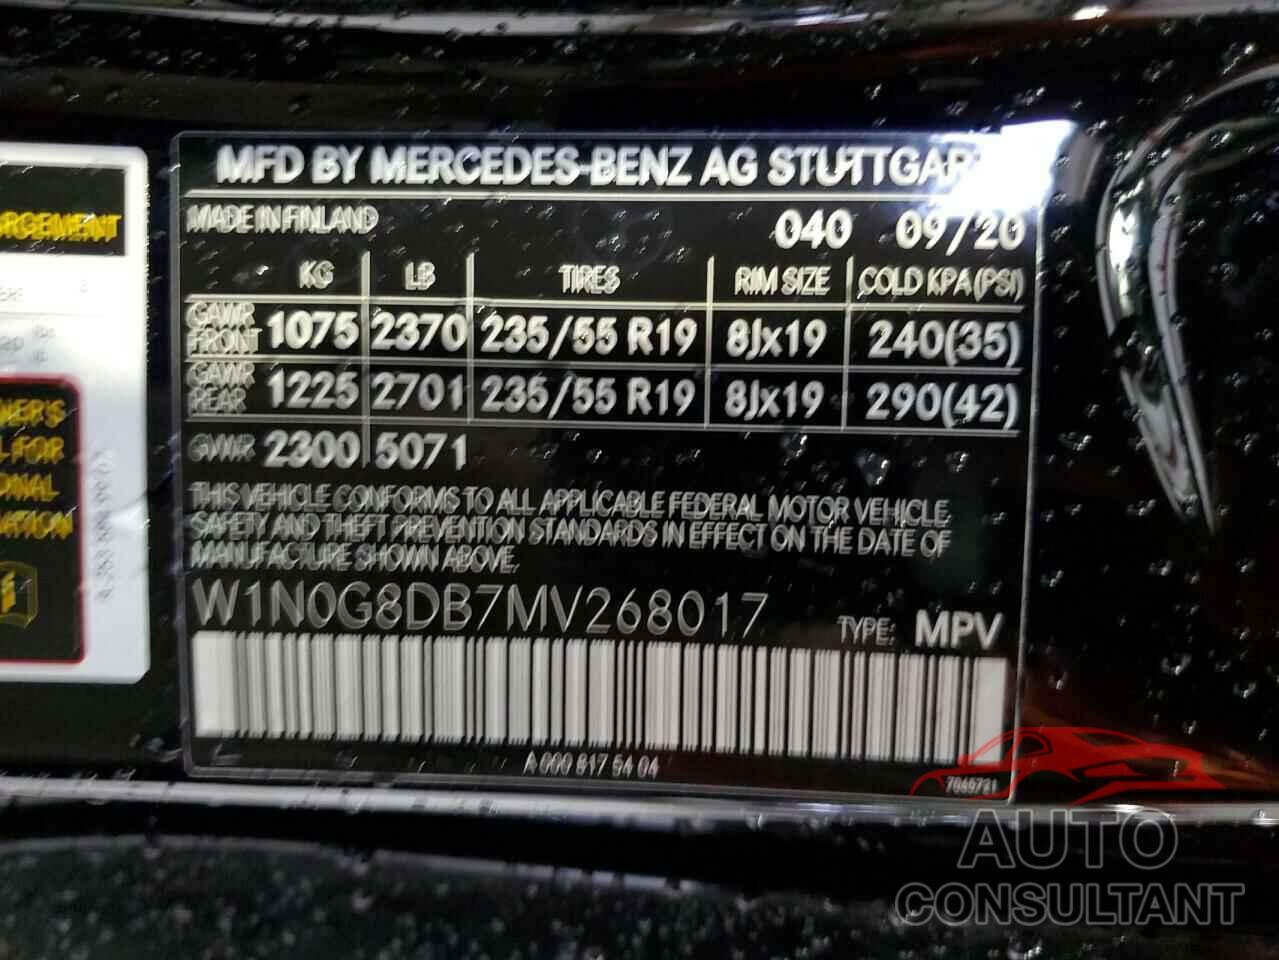 MERCEDES-BENZ GLC-CLASS 2021 - W1N0G8DB7MV268017